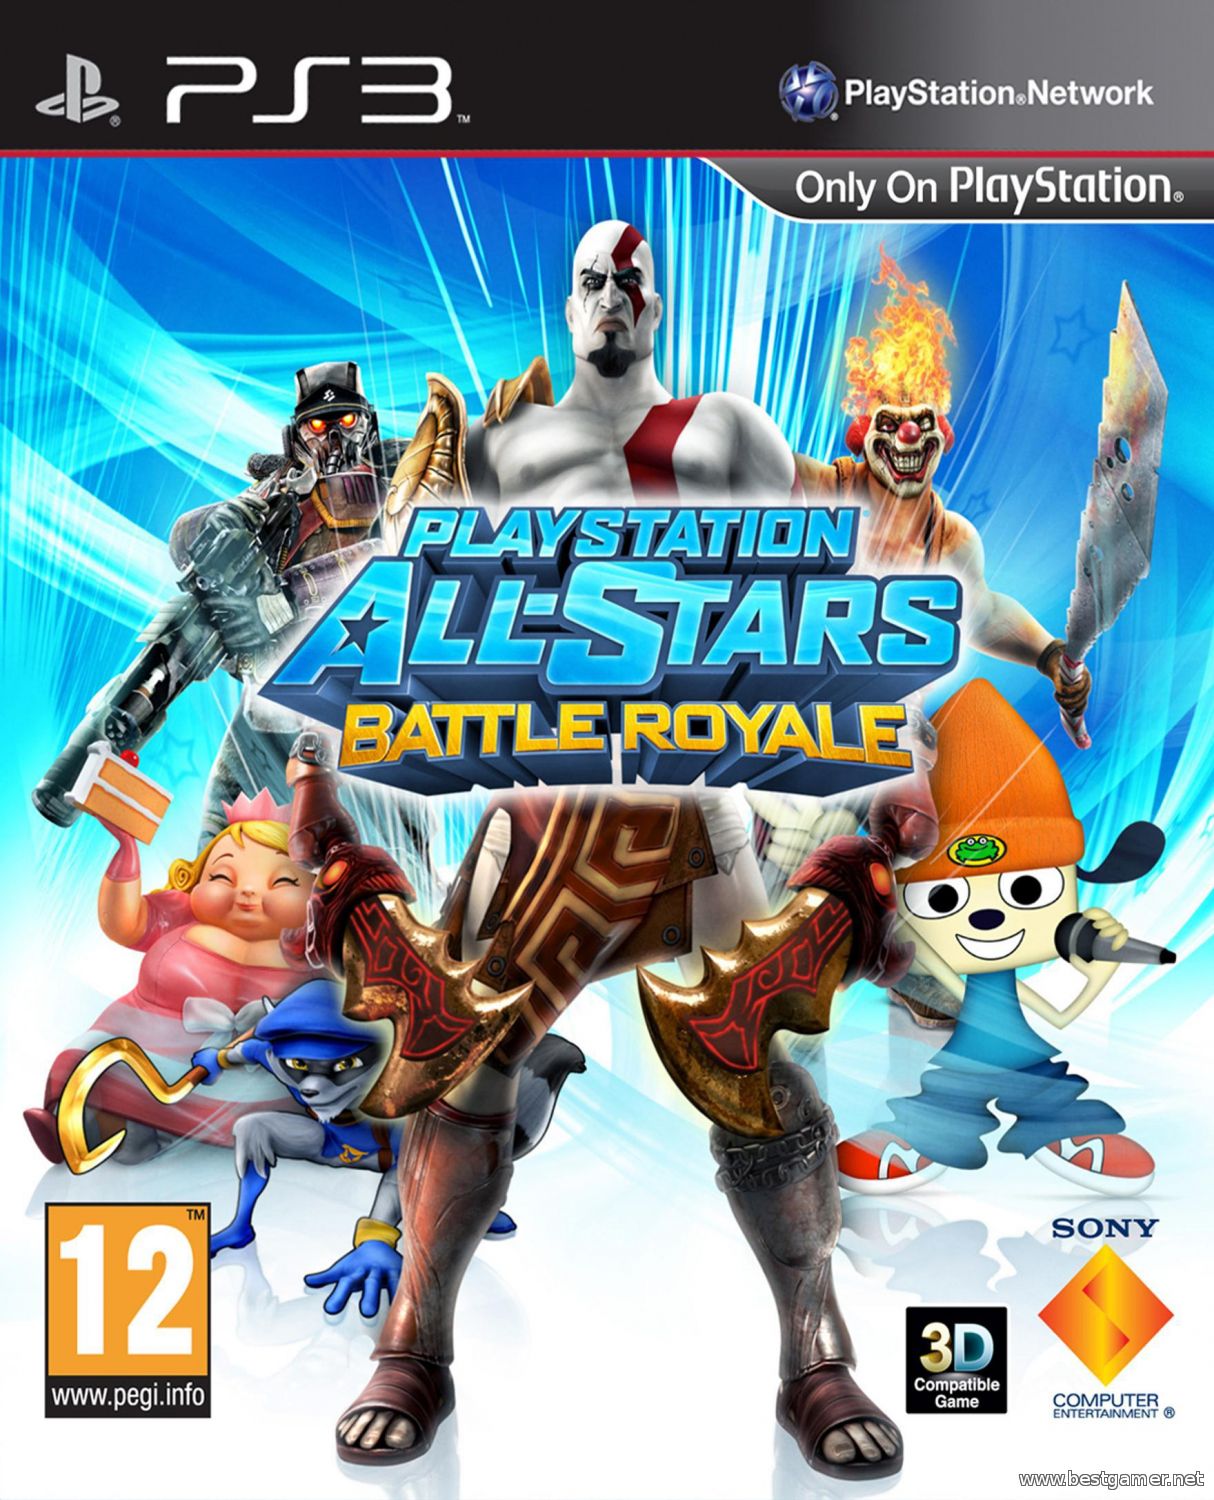 PlayStation All-Stars: Battle Royale / Звёзды PlayStation: Битва Сильнейших[Ru/En] [3.55] [Cobra ODE / E3 ODE PRO ISO]